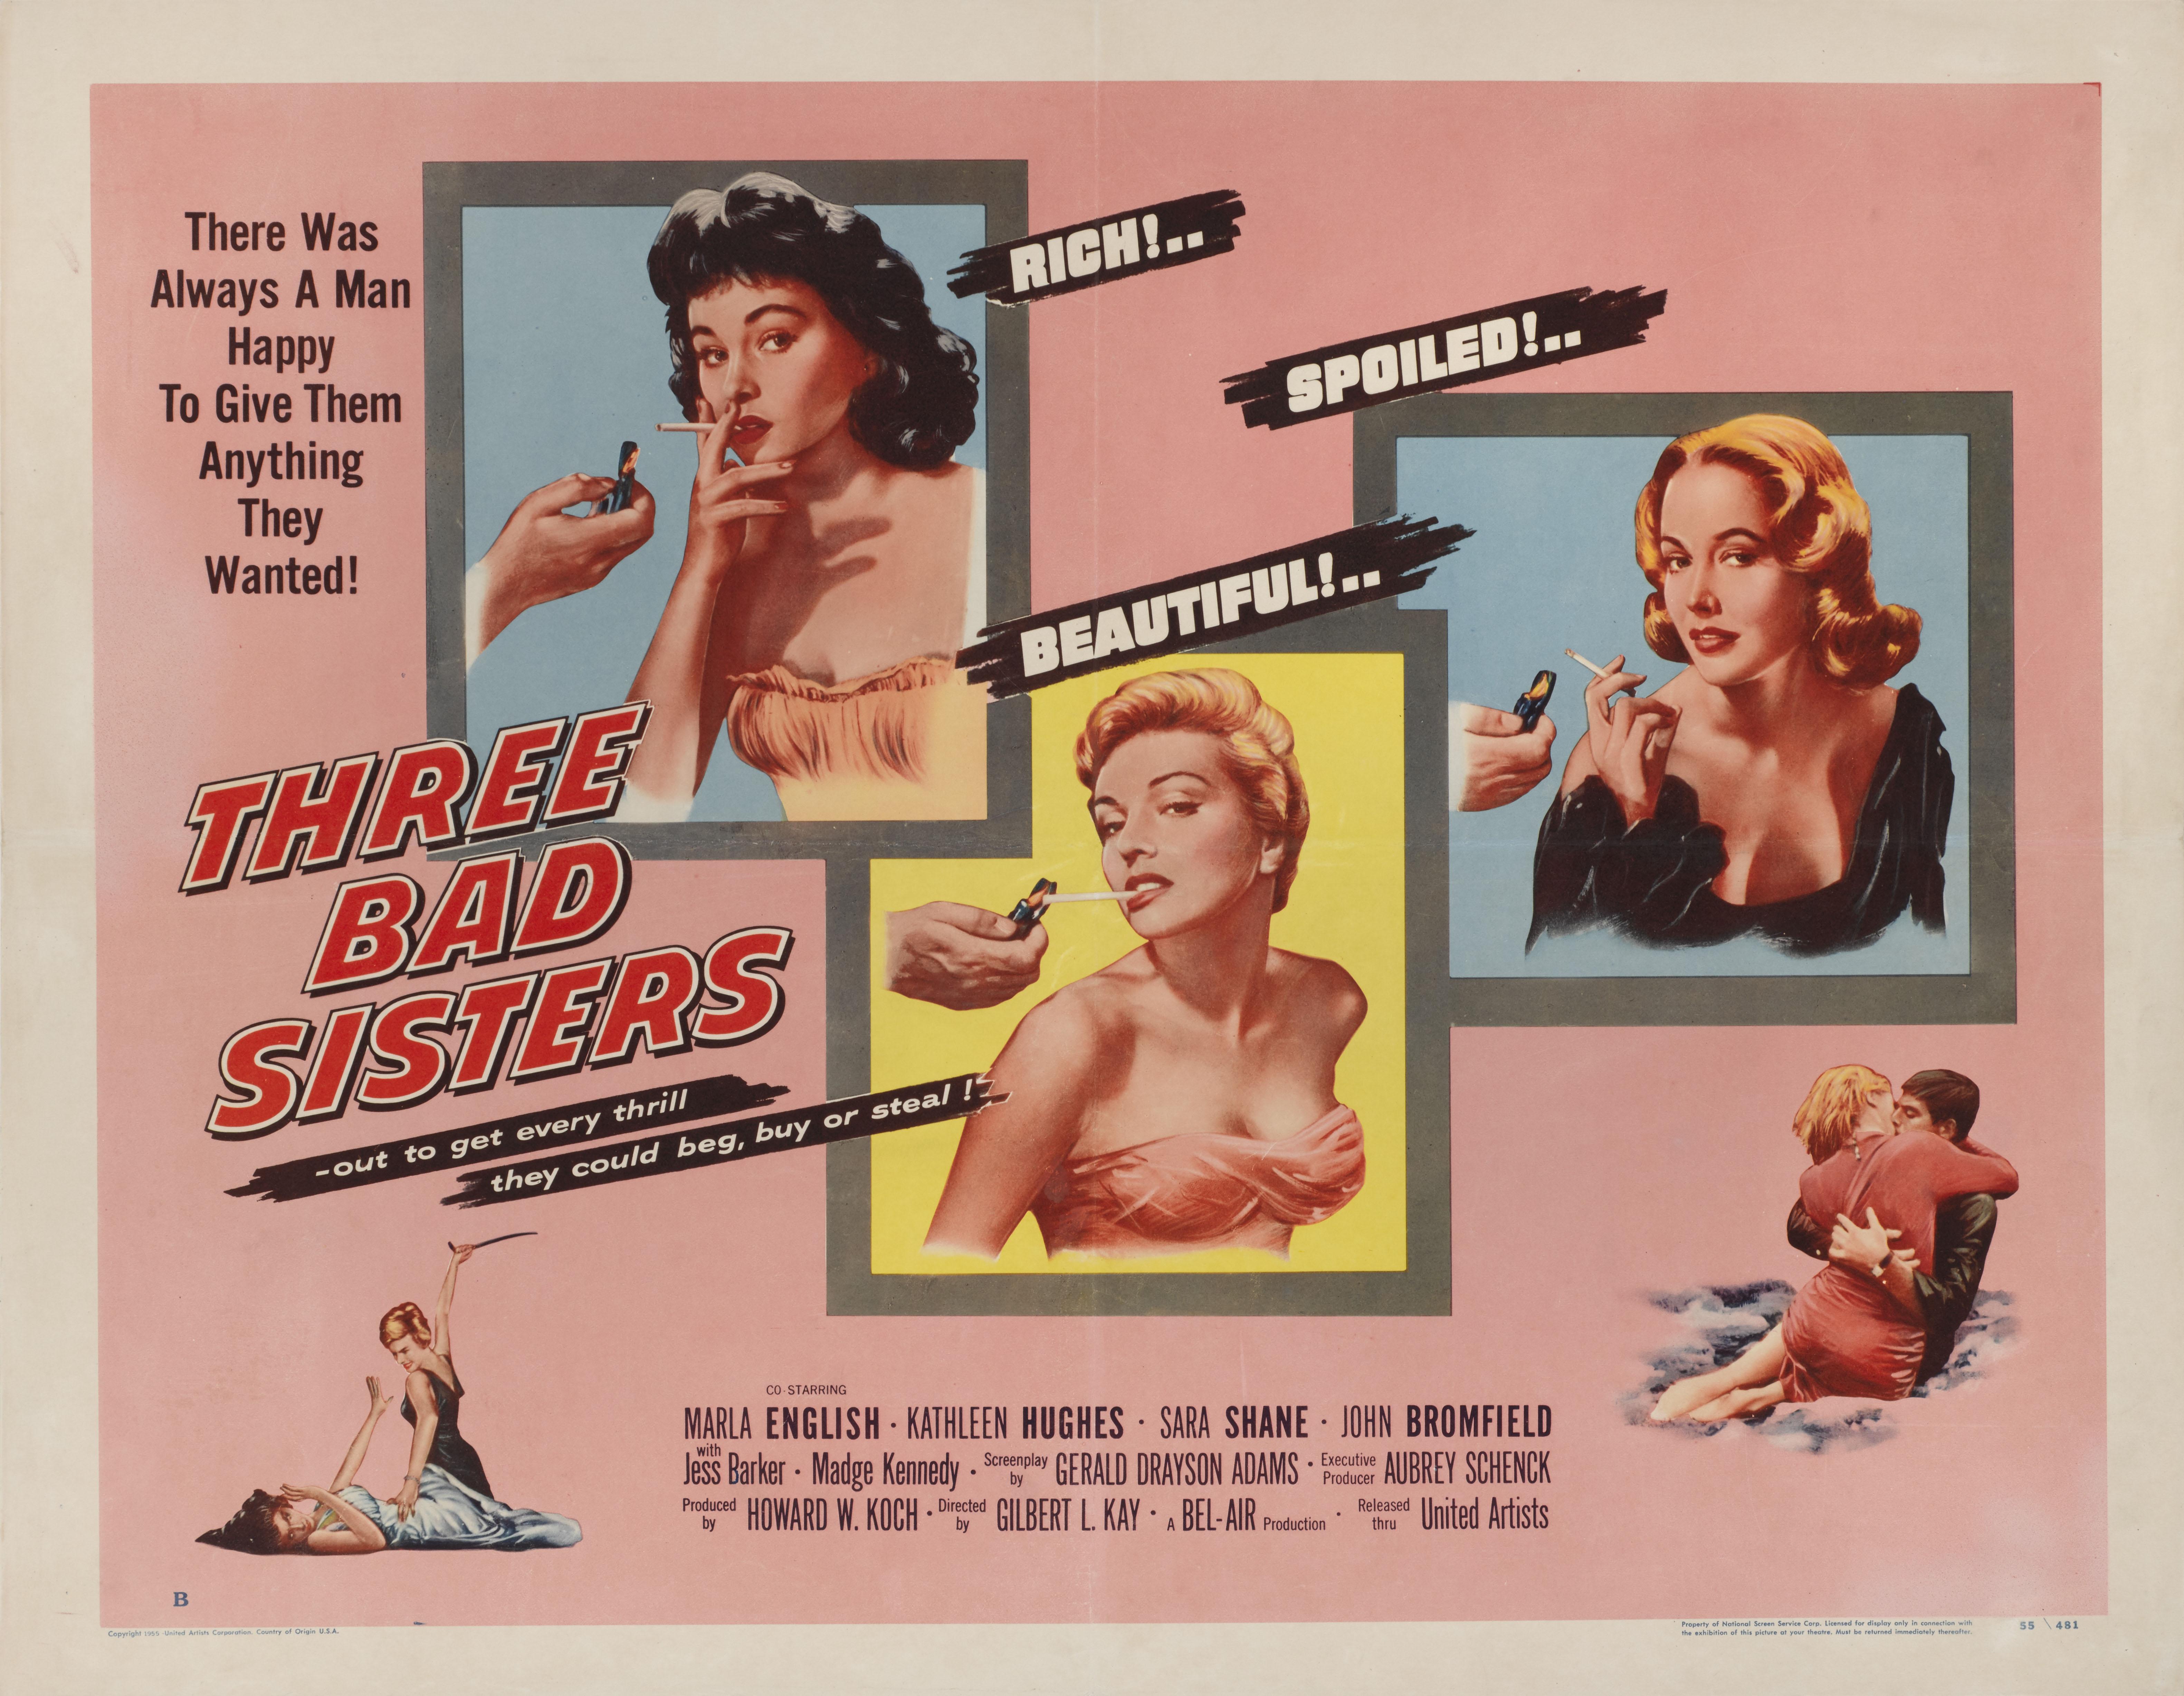 Originales B-Filmplakat im US-Stil für das Exploitation-Drama von 1956 mit Marla English, Kathleen Hughes und Sara Shane in den Hauptrollen. Die Regie bei diesem Film führte Gilbert Kay.
Dieses Poster ist mit Schutzpapier hinterlegt.